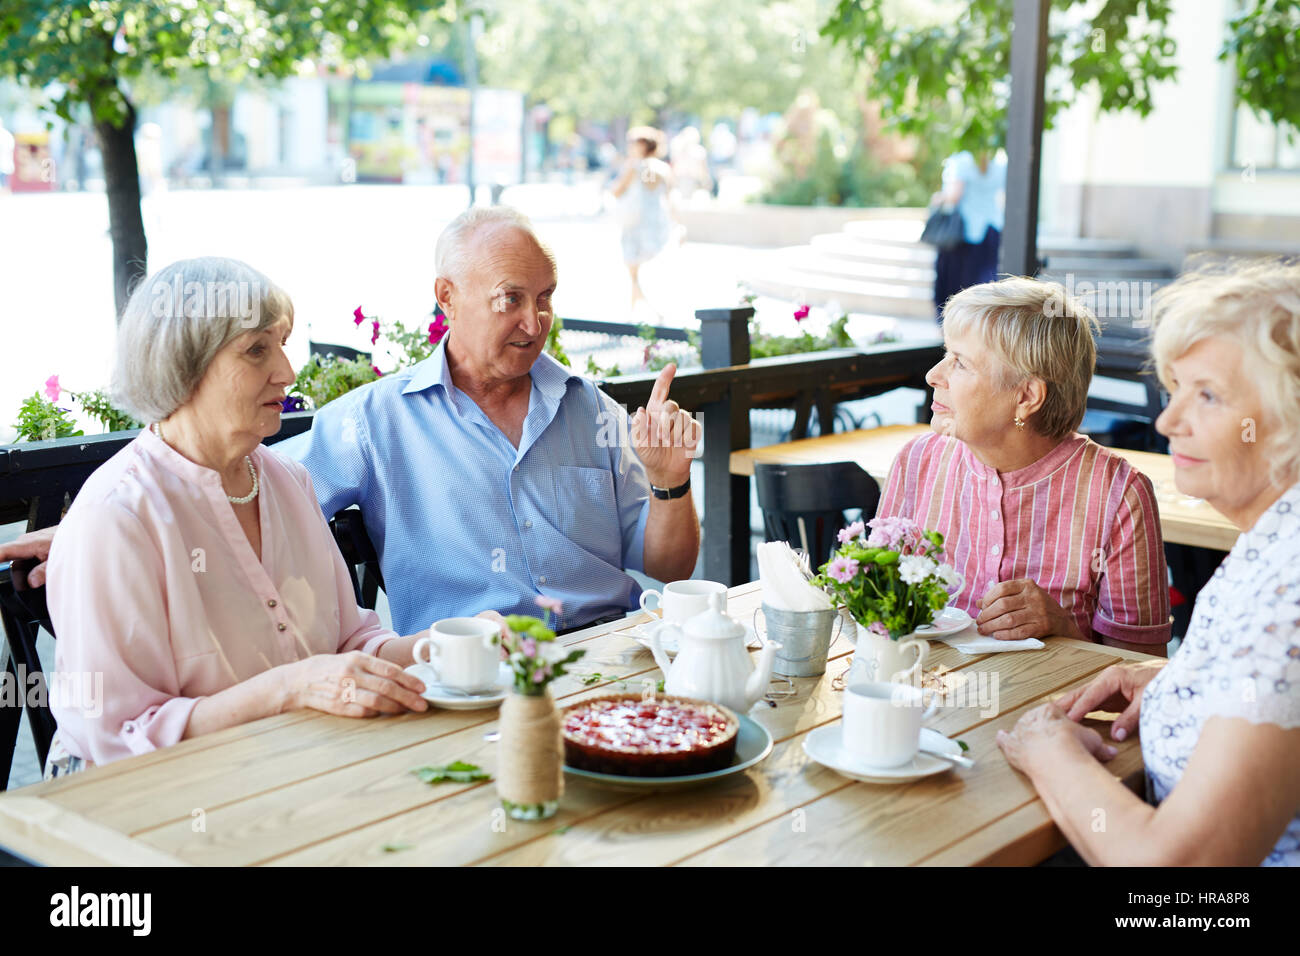 Drei ziemlich alte Frauen mit Kaffee und Käsekuchen am Café-Tisch sitzen zwar ihre männlichen Freund unterhalten sie mit Small talk Stockfoto